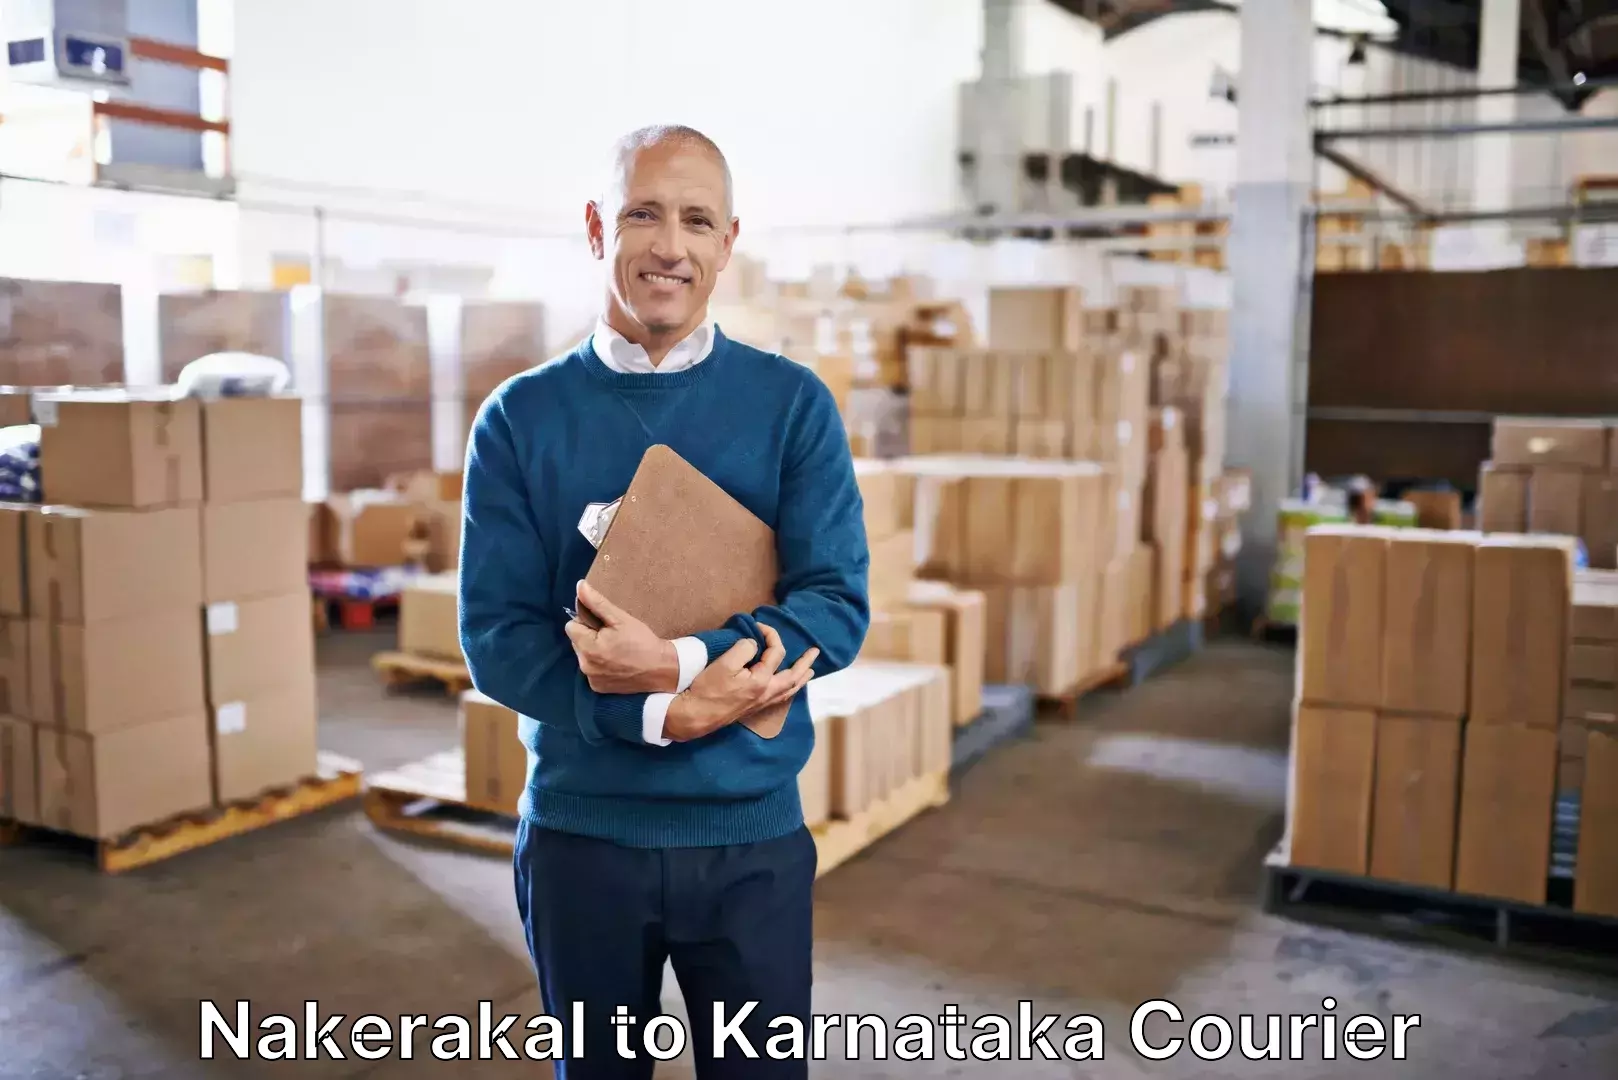 Luggage shipment tracking Nakerakal to Soraba